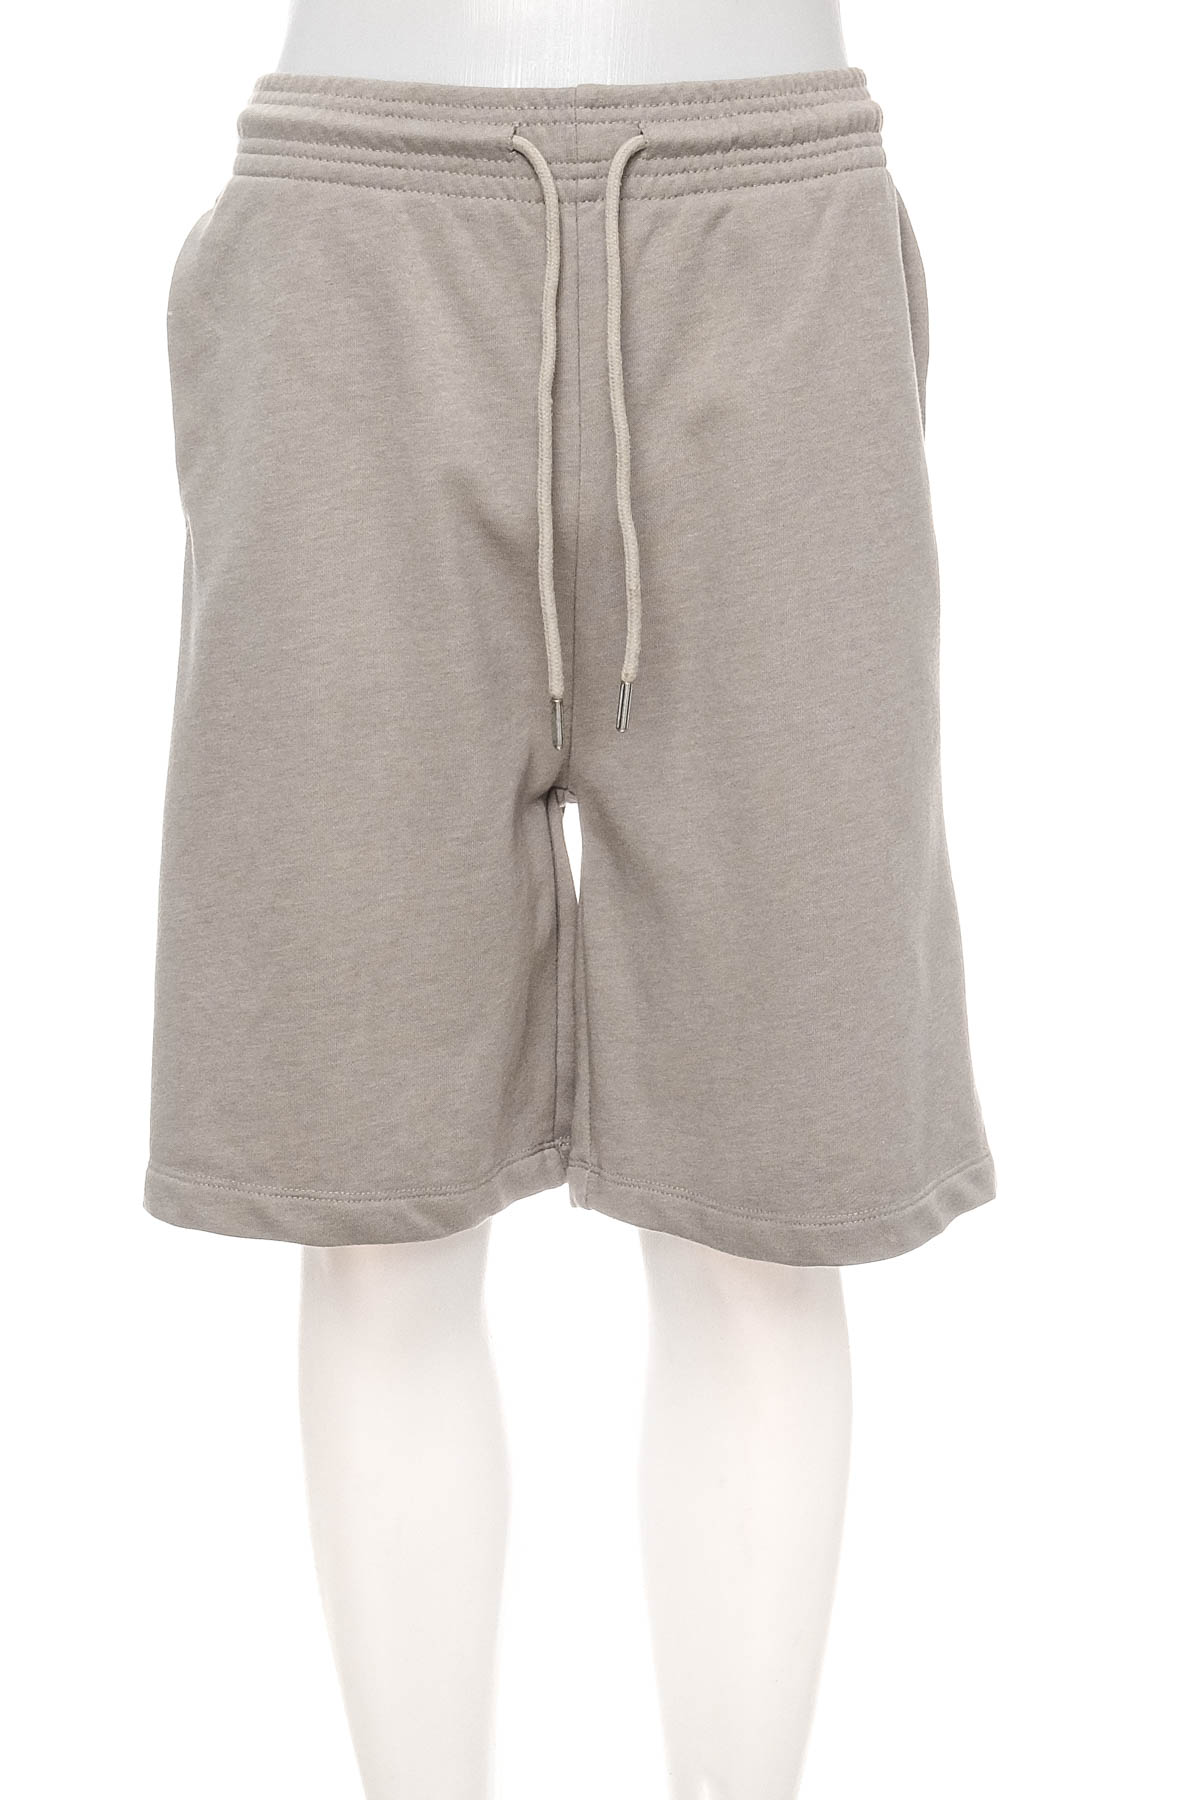 Pantaloni scurți bărbați - H&M Basic - 0